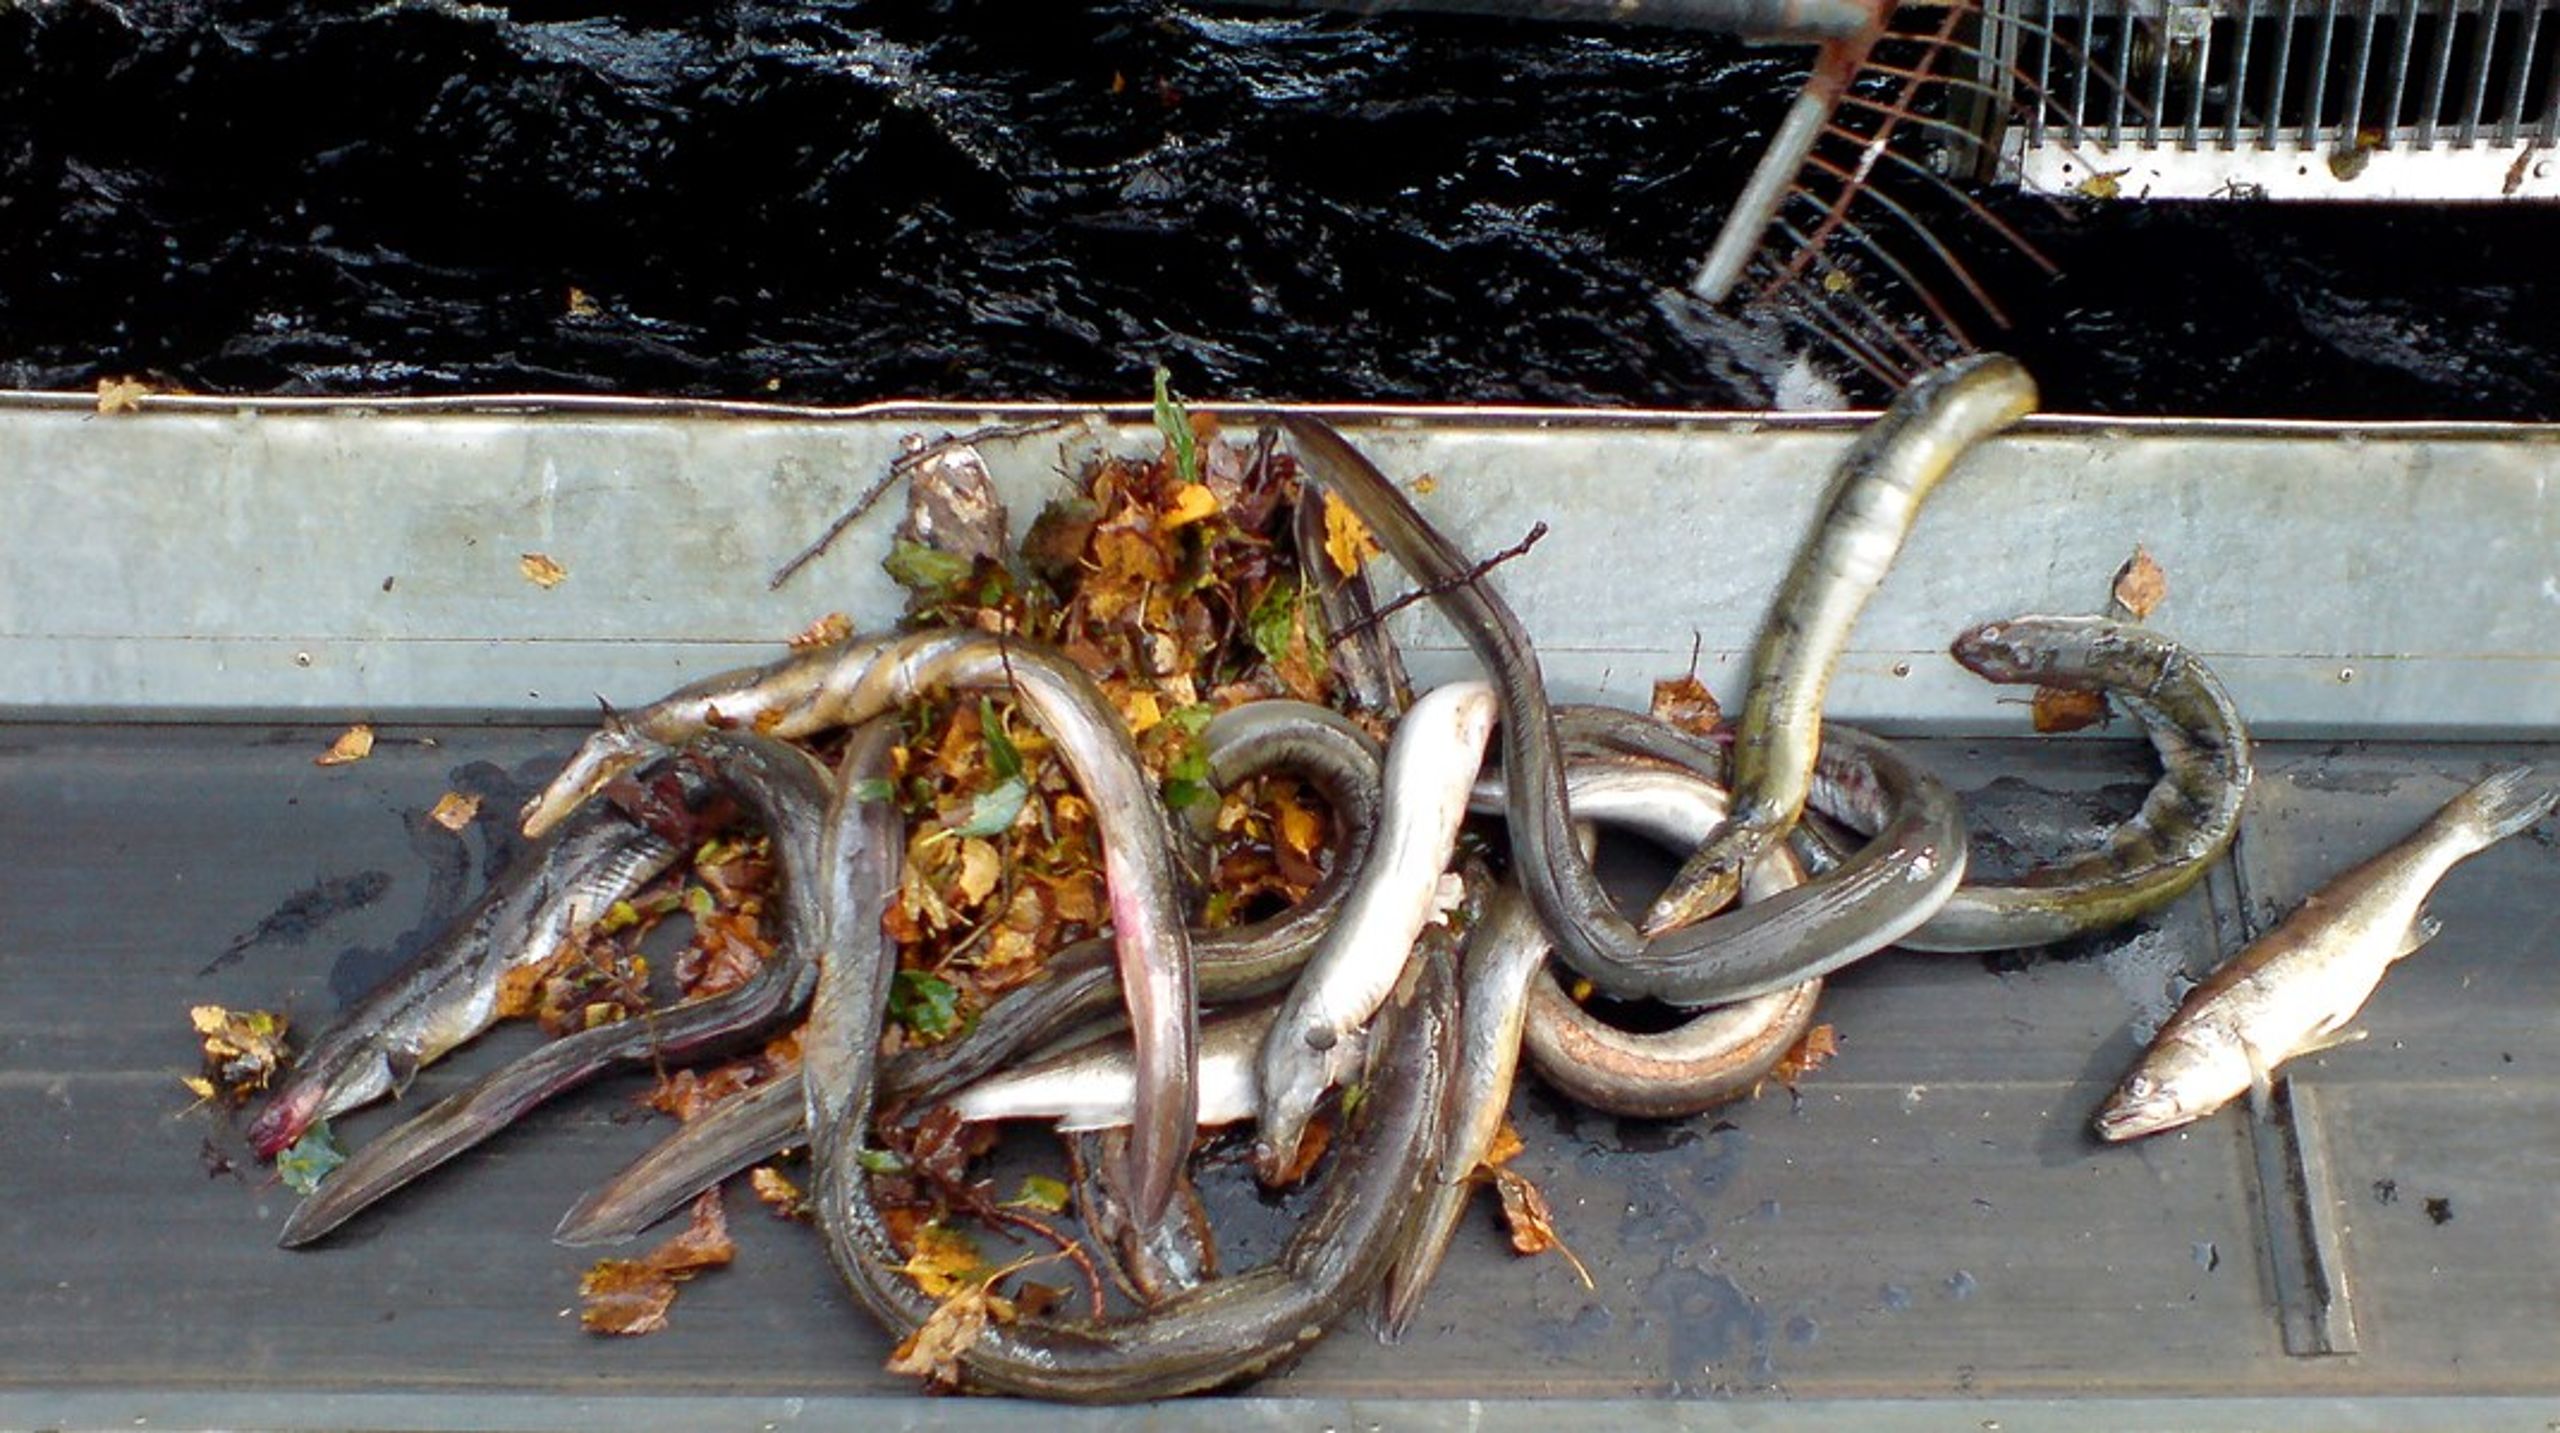 Danmark skal komme ind i kampen for ålens overlevelse. Vi skal lukke for ålefiskeri fra september til november, og fritidsfiskeri af ål skal forbydes helt, skriver&nbsp;Cathrine Pedersen Schirmer.